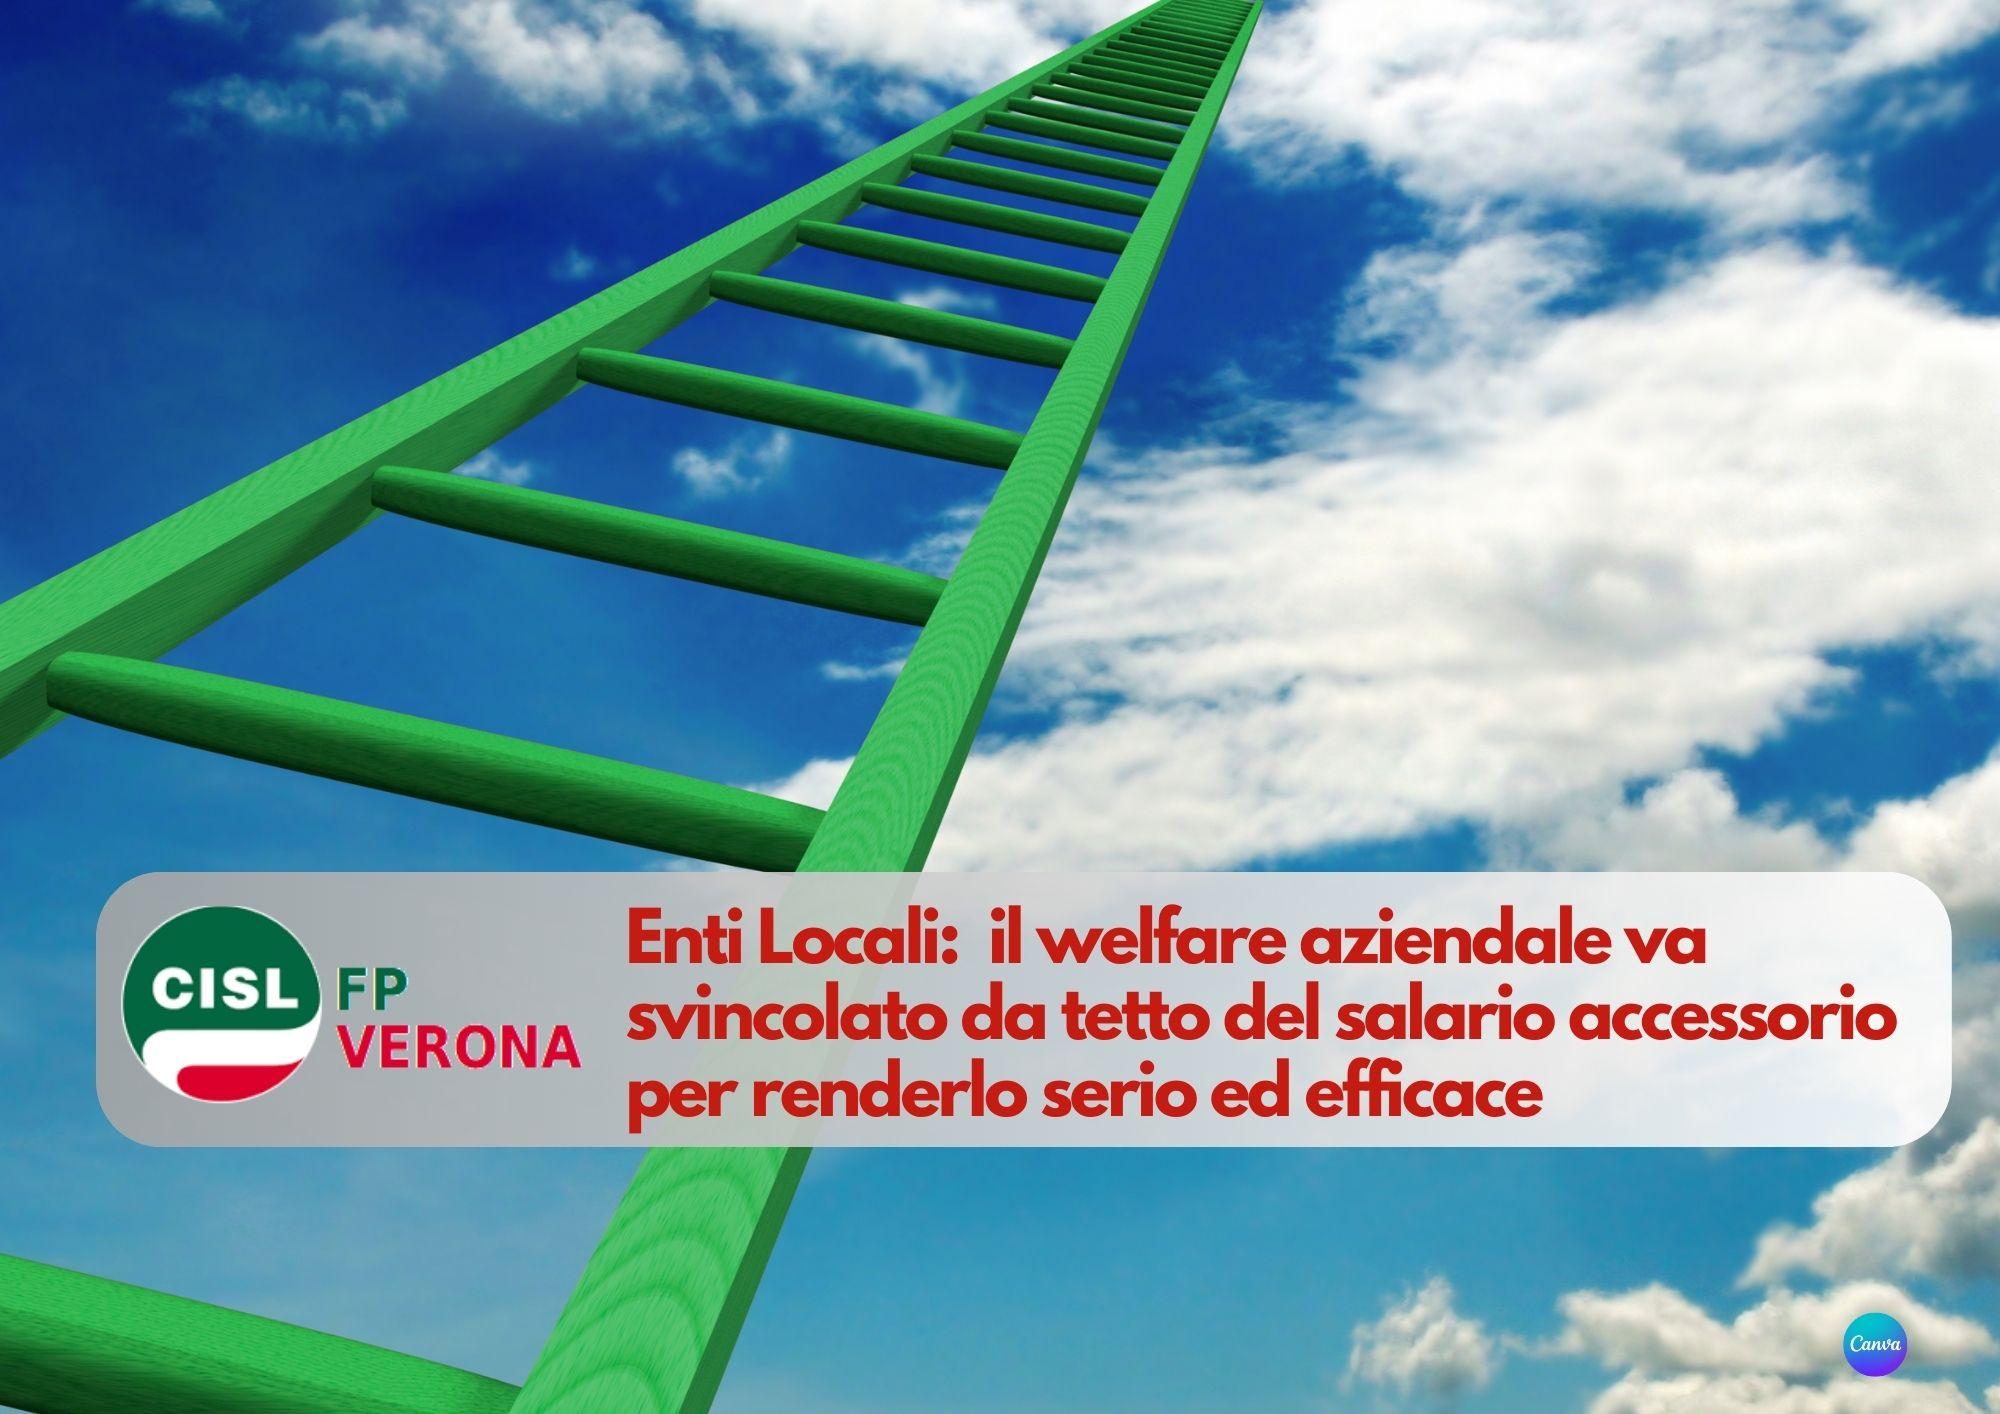 CISL FP Verona. Enti Locali: il welfare aziendale va svincolato da tetto del salario accessorio.